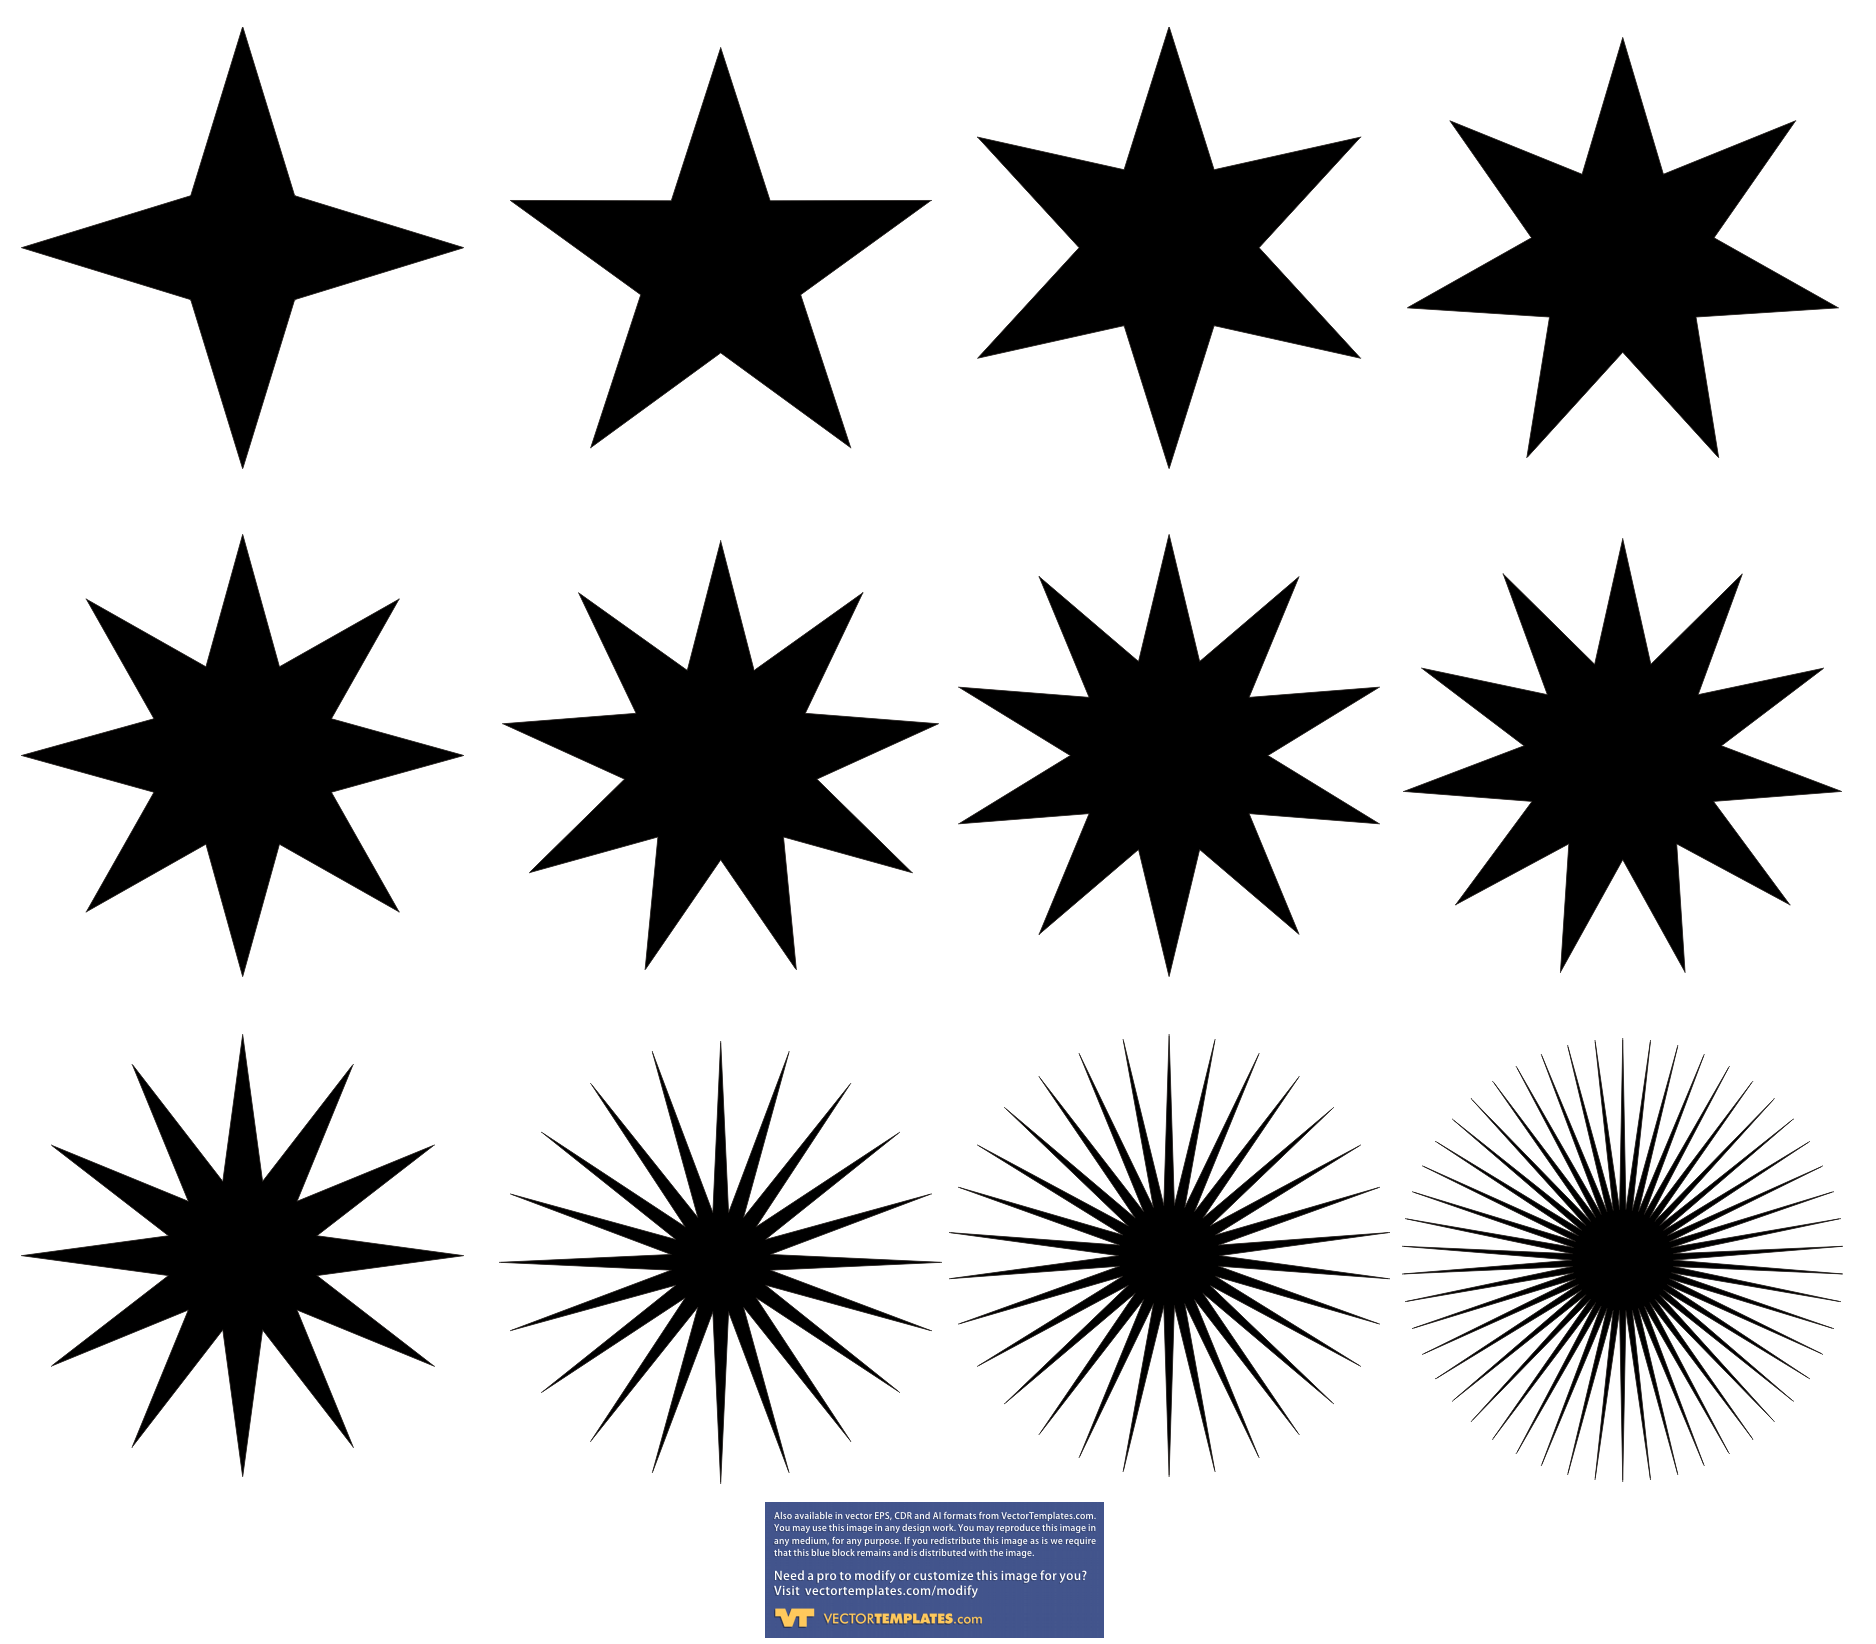 14 White-Flag Star Vector Images - Star Vector Art Free, American Flag